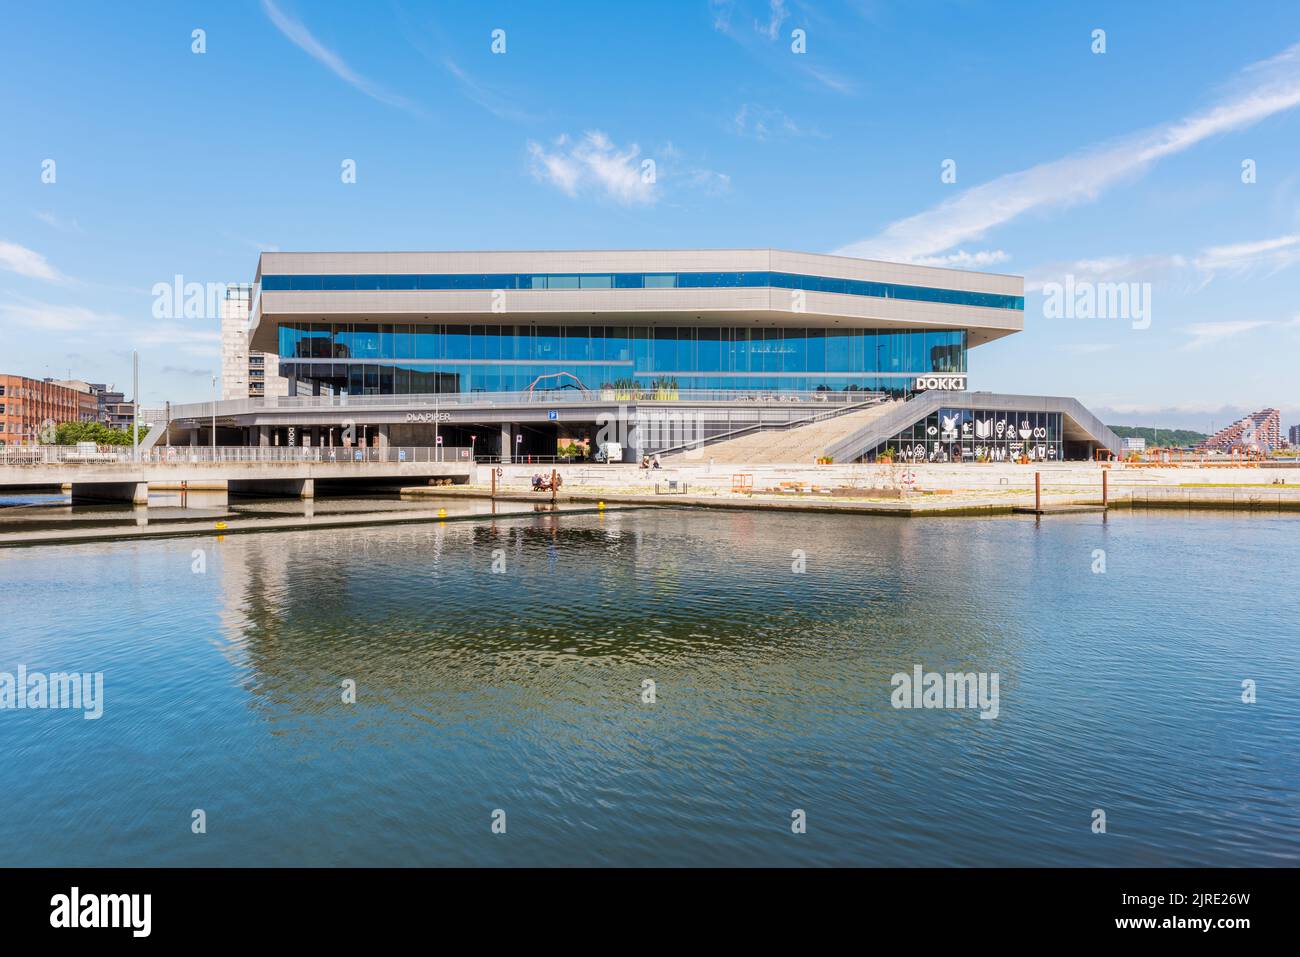 Dokk1 edificio ad Aarhus, Danimarca. E' una biblioteca pubblica e un centro culturale vicino al porto ed e' stato completato nel 2015. Foto Stock